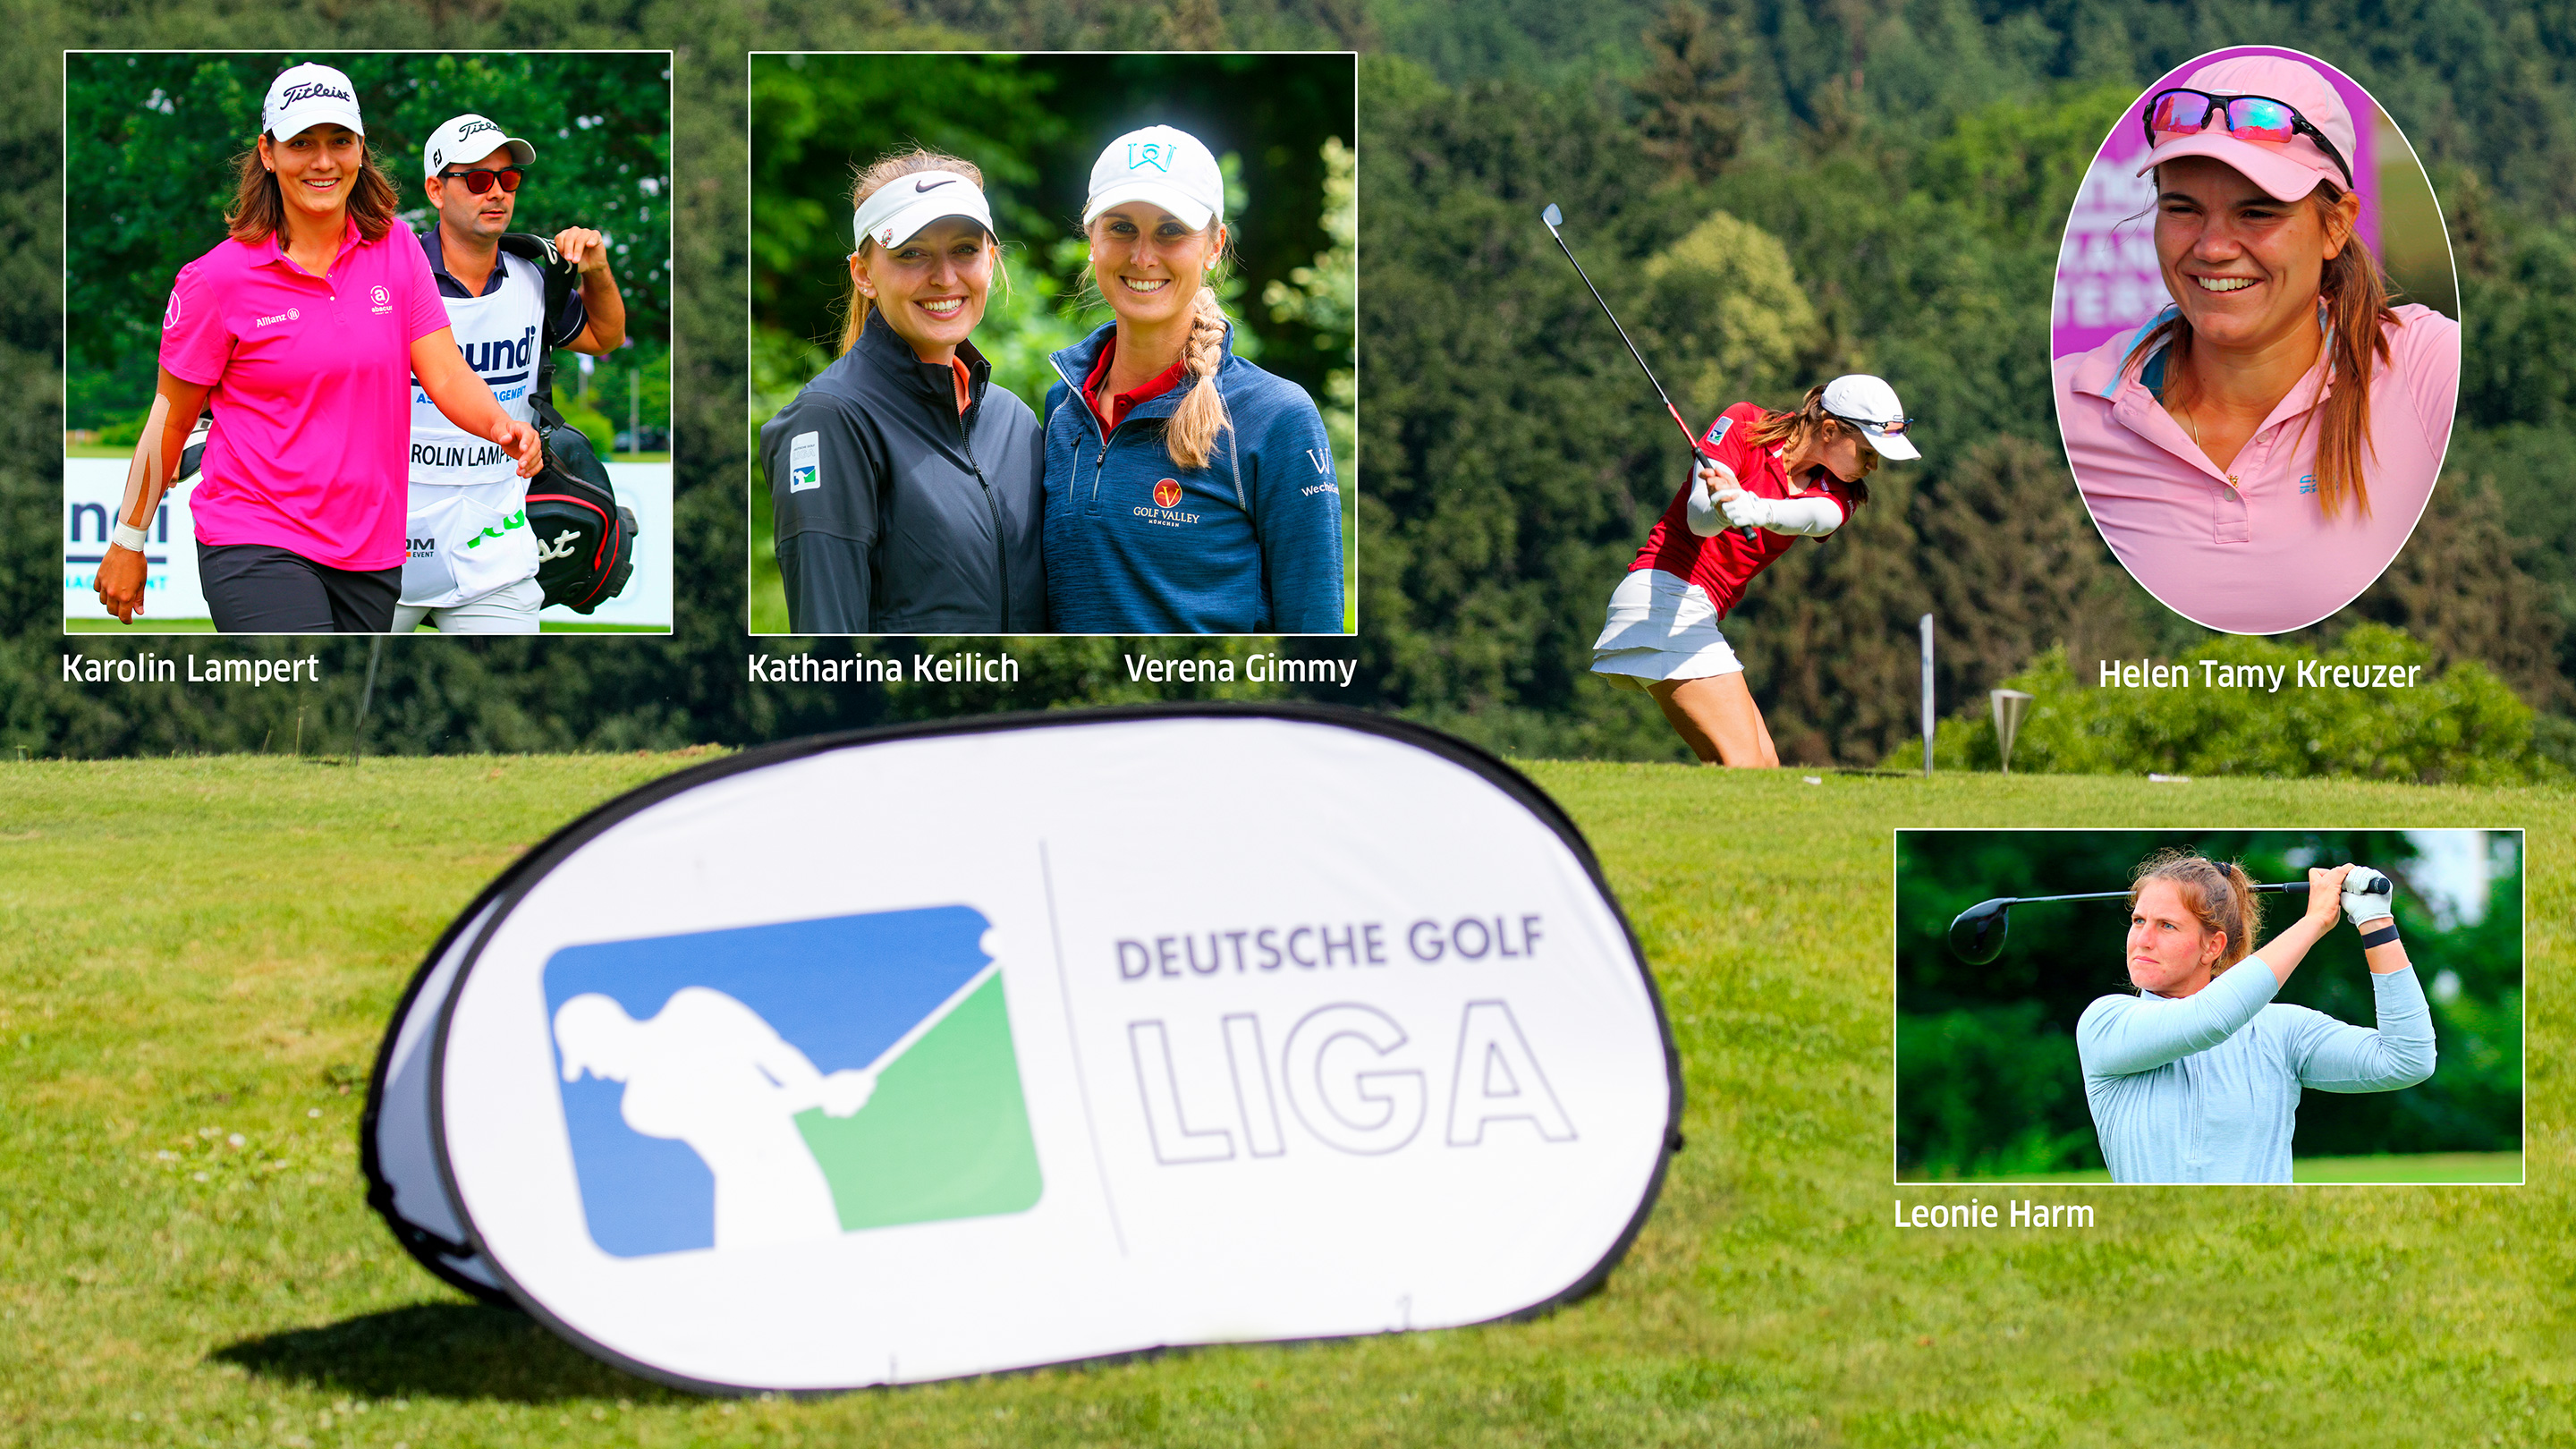 Wann immer möglich unterstützen diese Tourspielerinnen ihre Teams in der 1. Bundelsiga Süd der Damen. Fotos: golfsupport.nl / DGV / mat